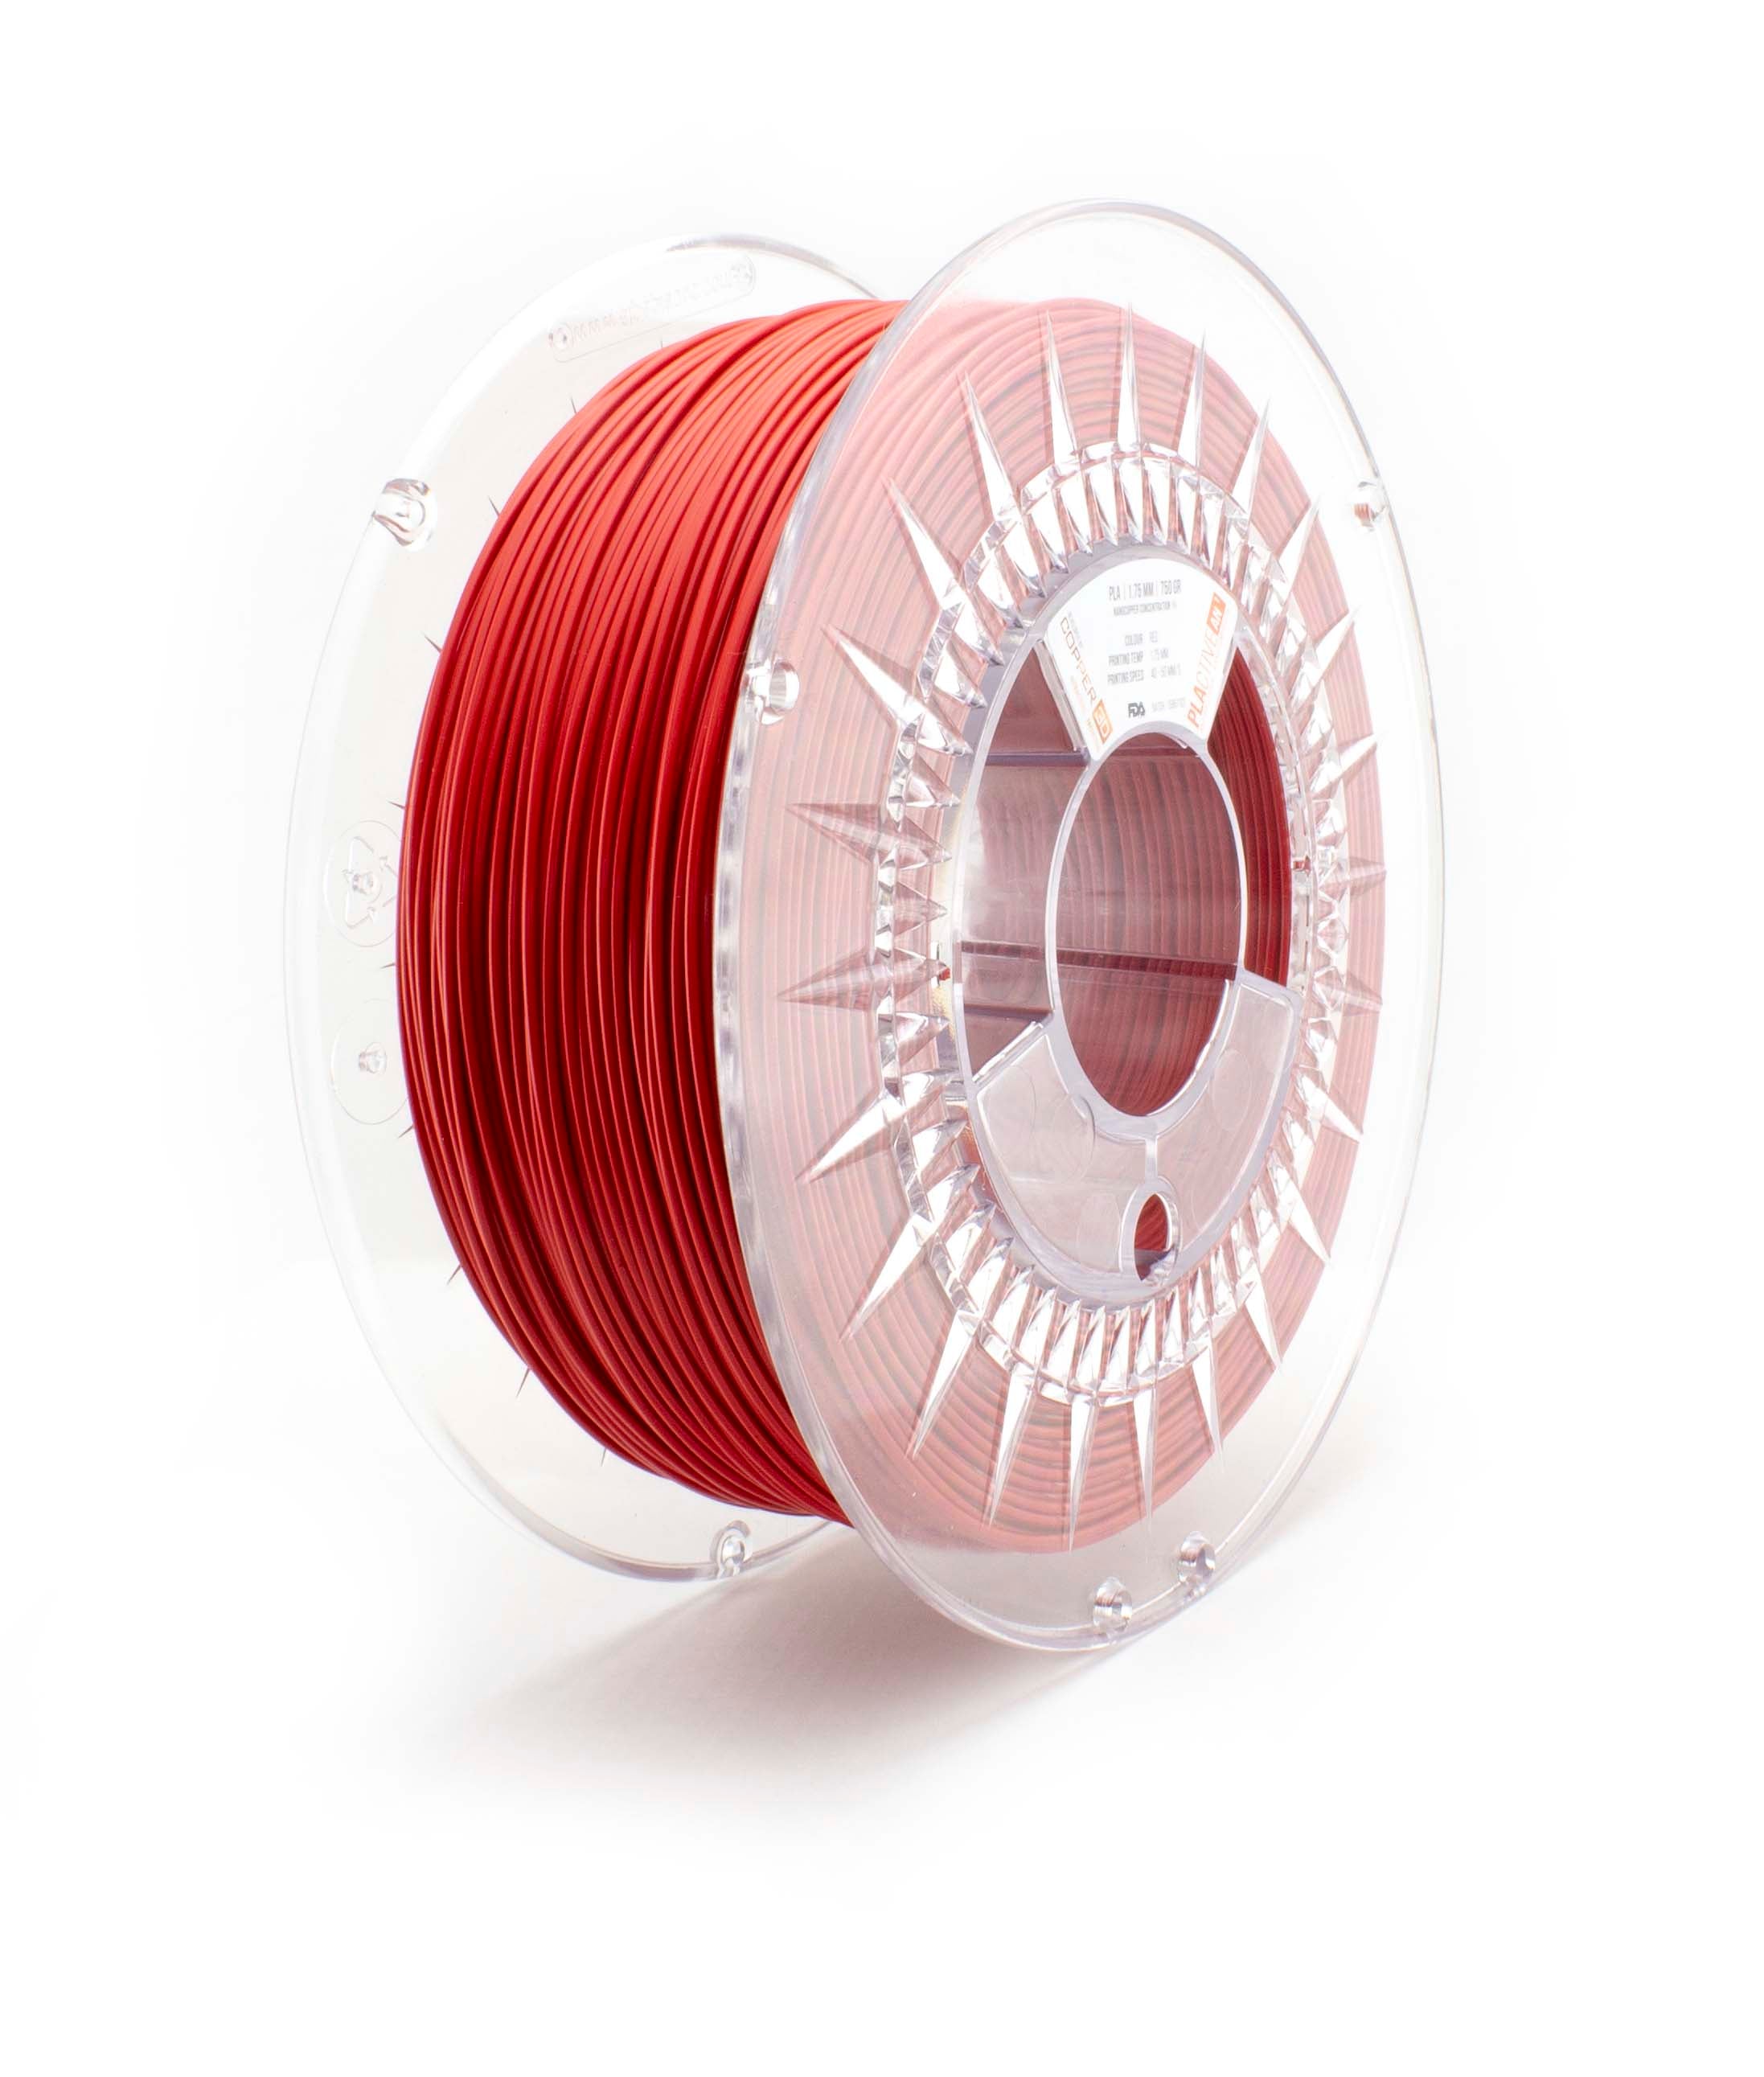 3D MetalFil - Classic Copper - High quality filaments - Formfutura